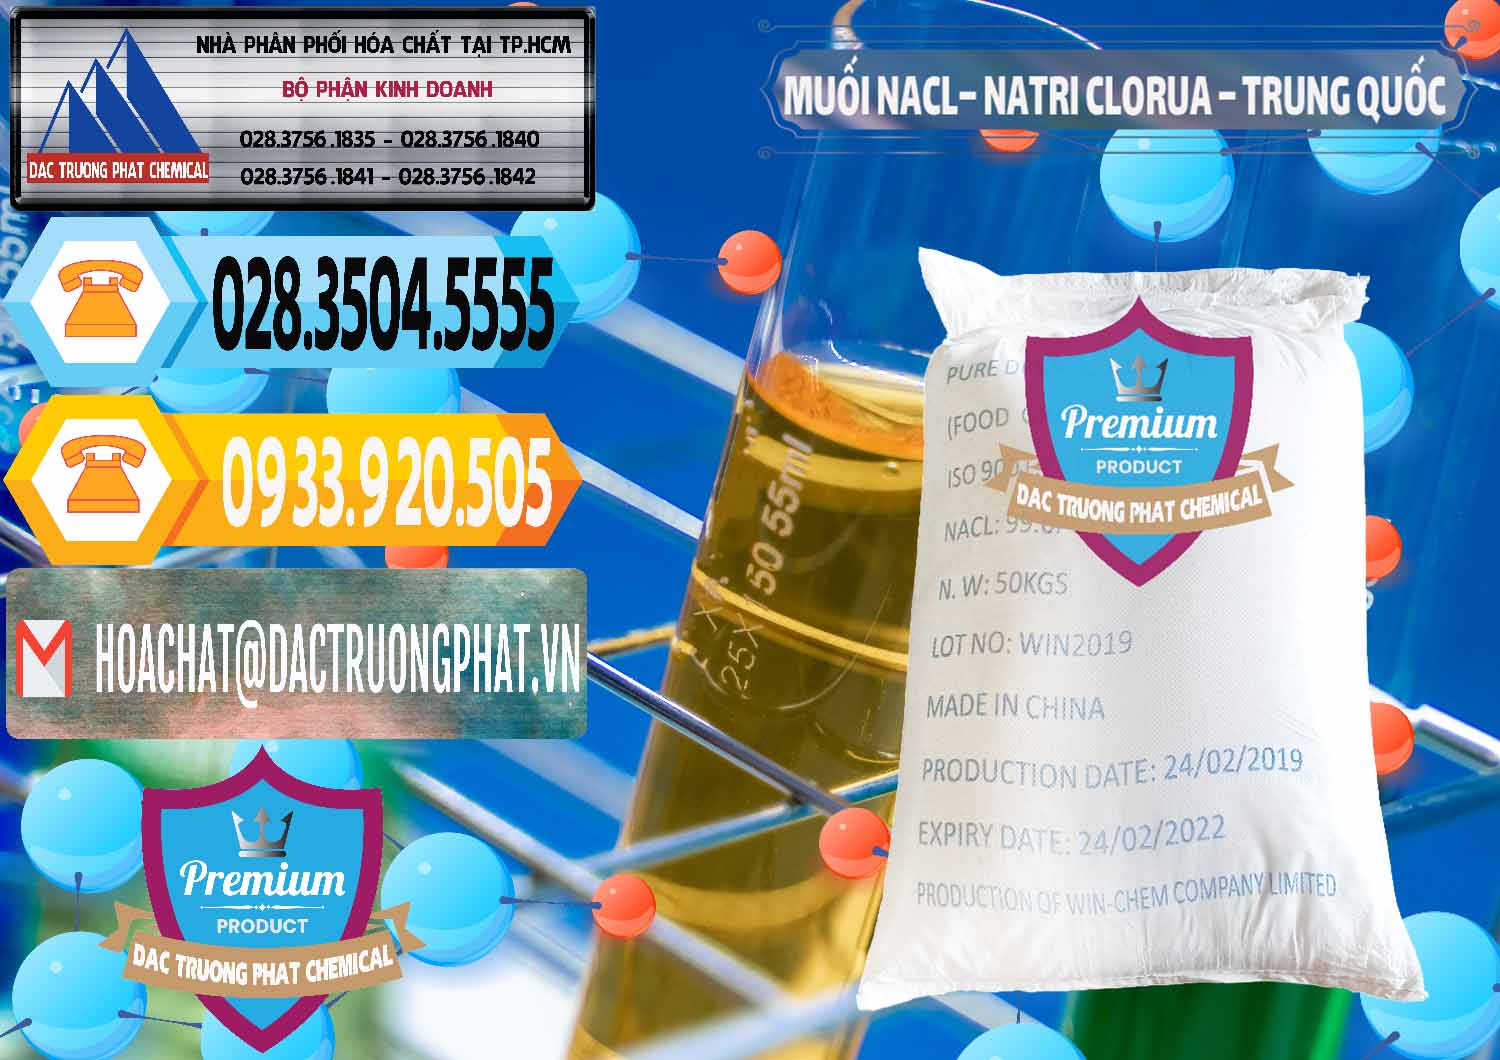 Đơn vị chuyên kinh doanh và bán Muối NaCL – Sodium Chloride Trung Quốc China - 0097 - Nhà phân phối và kinh doanh hóa chất tại TP.HCM - hoachattayrua.net